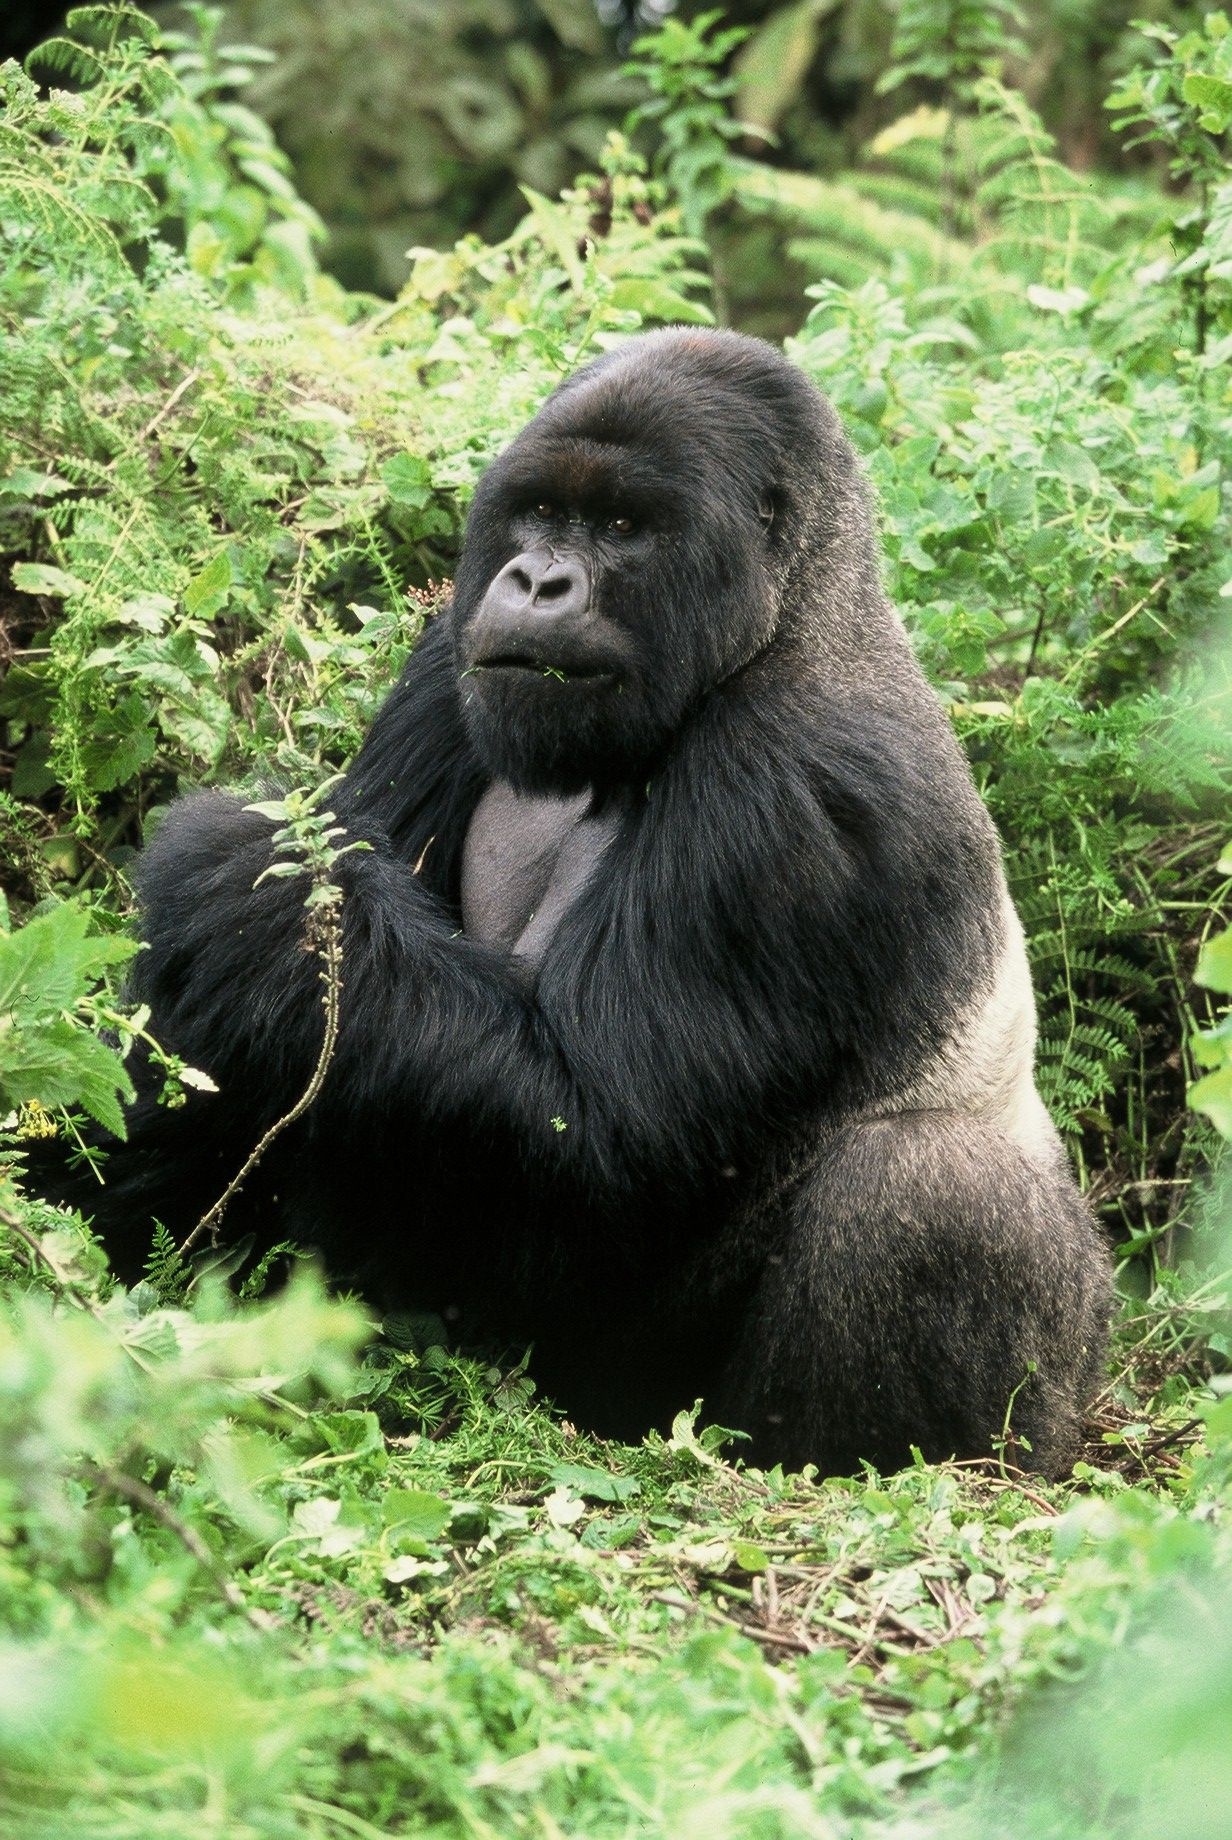 Special Interest Safaris – Authentic Gorilla, Chimps & Game Safari!